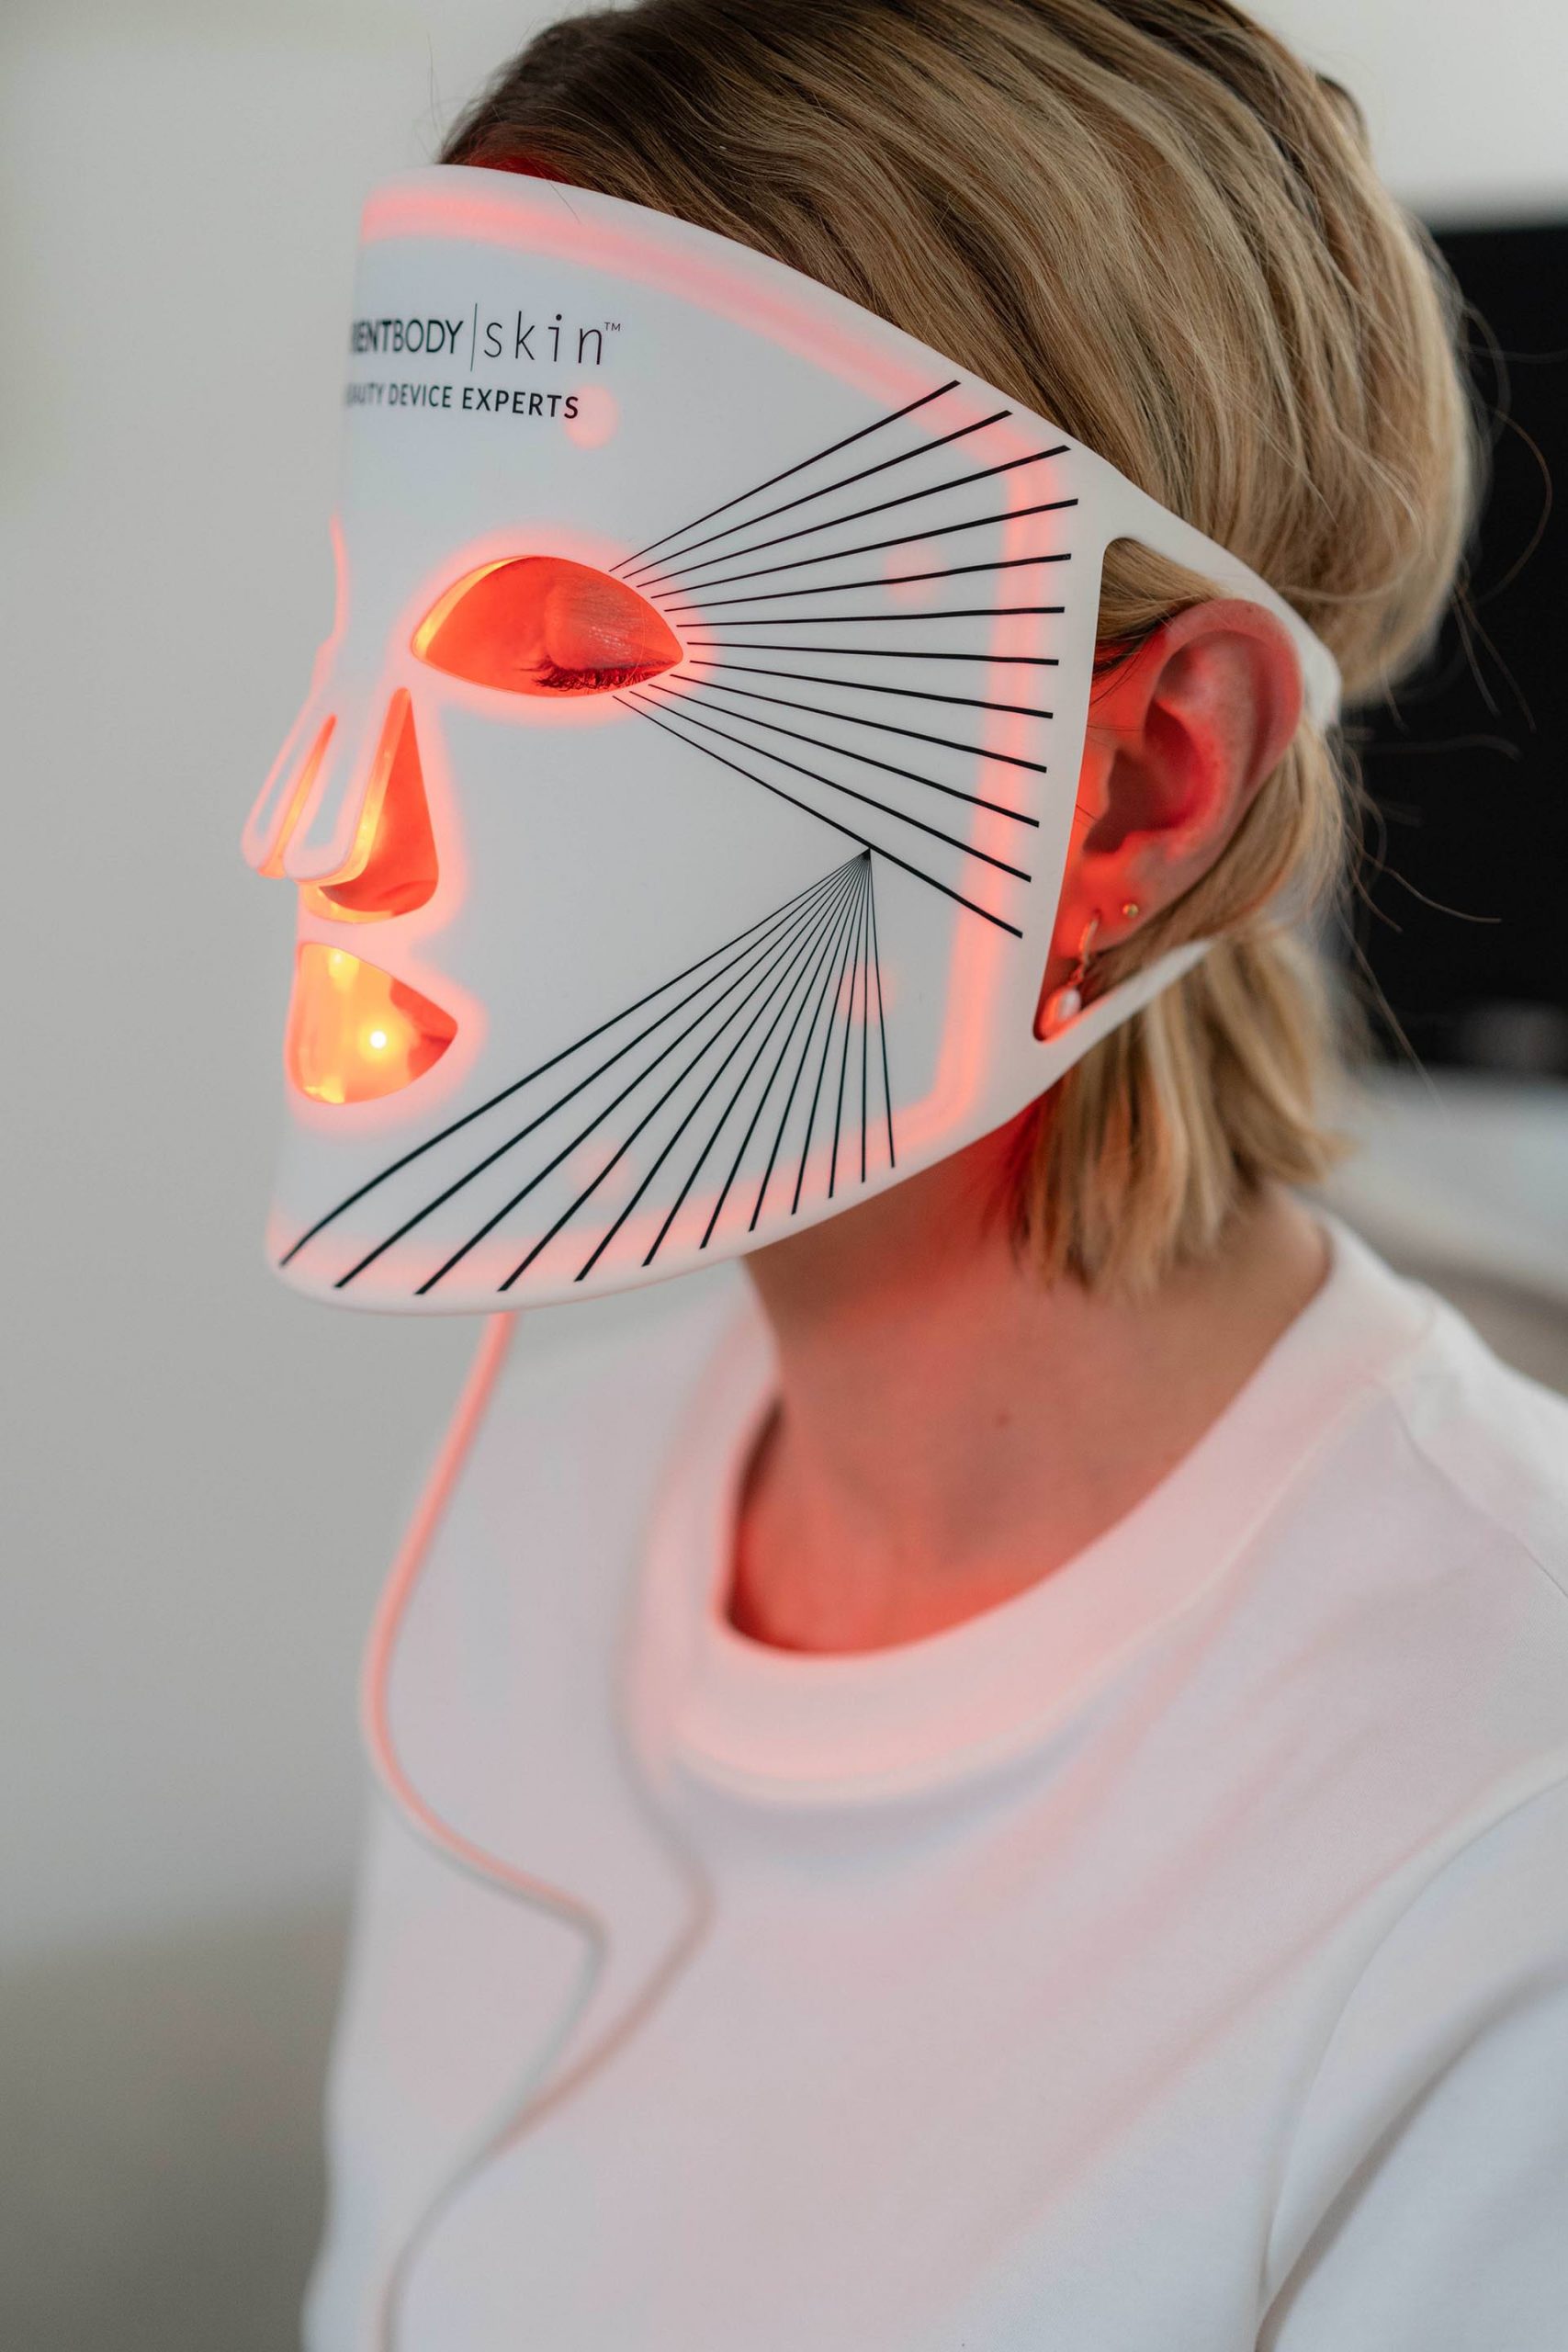 Anzeige. Auf der Suche nach einer Lösung für Rötungen im Gesicht? Probier die CurrentBody LED-Maske aus. Sie nutzt Lichttherapie, um die Haut zu beruhigen und den Hautton auszugleichen.